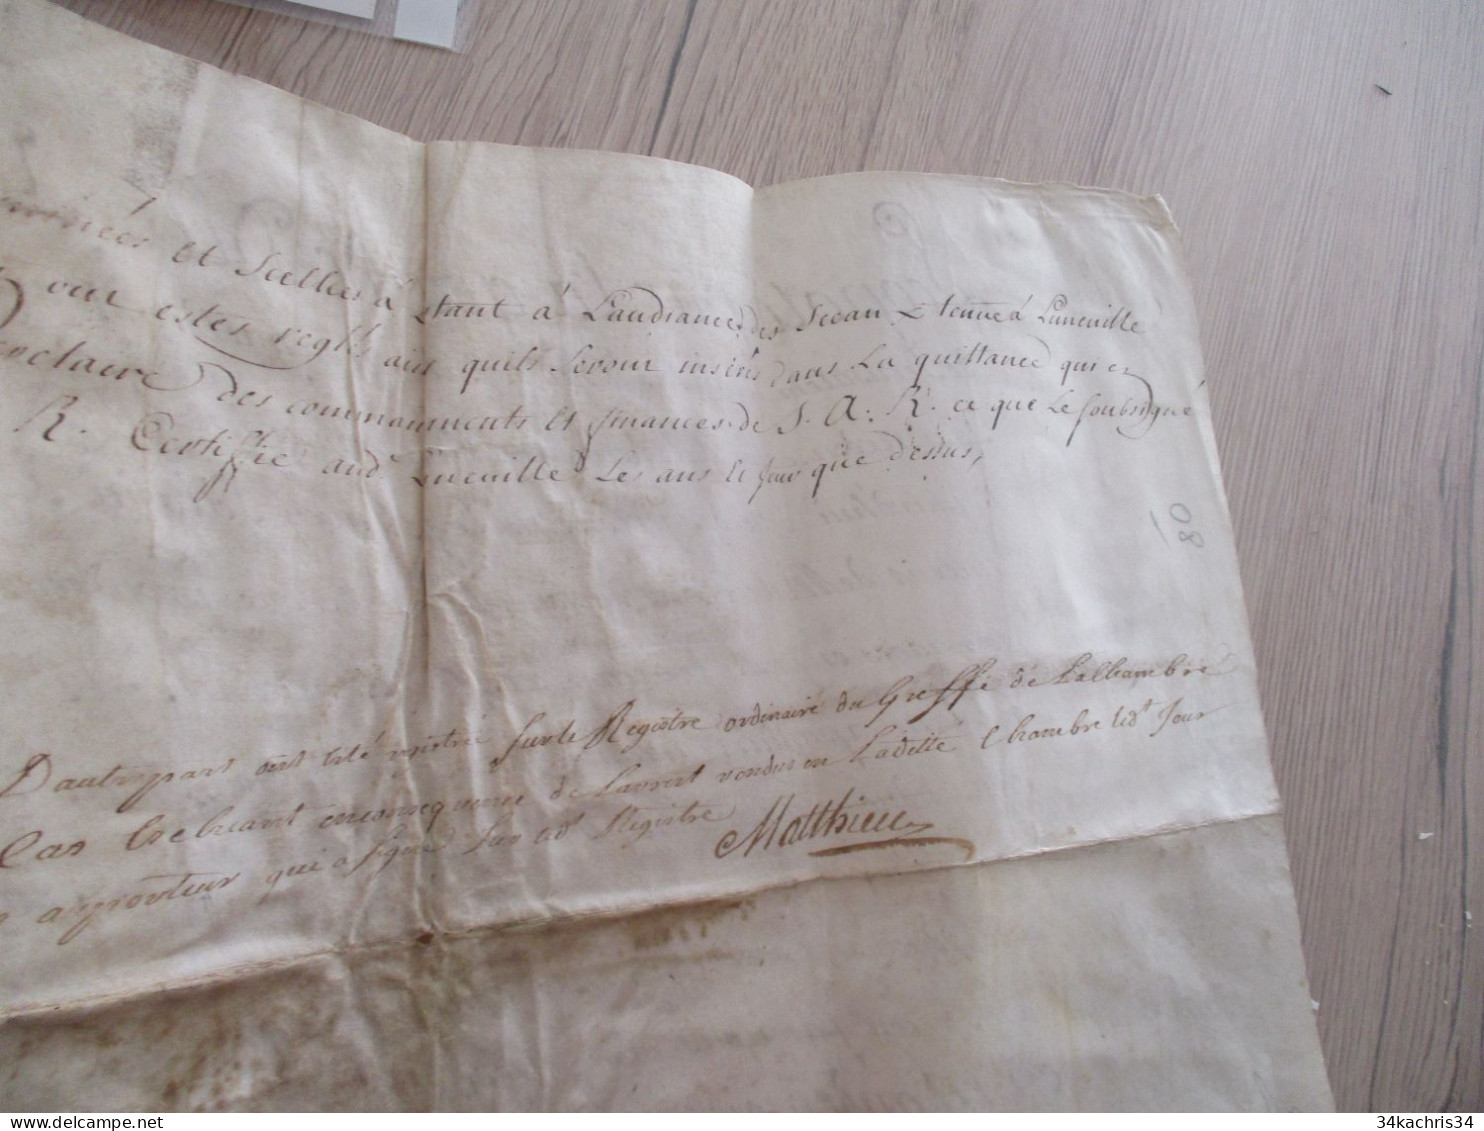 Pièce signée velin avec sceau partiel et cassé Metz Busaney Luneville 1720 fiscaux à voir Duc de Bar Patentes Bourlemont